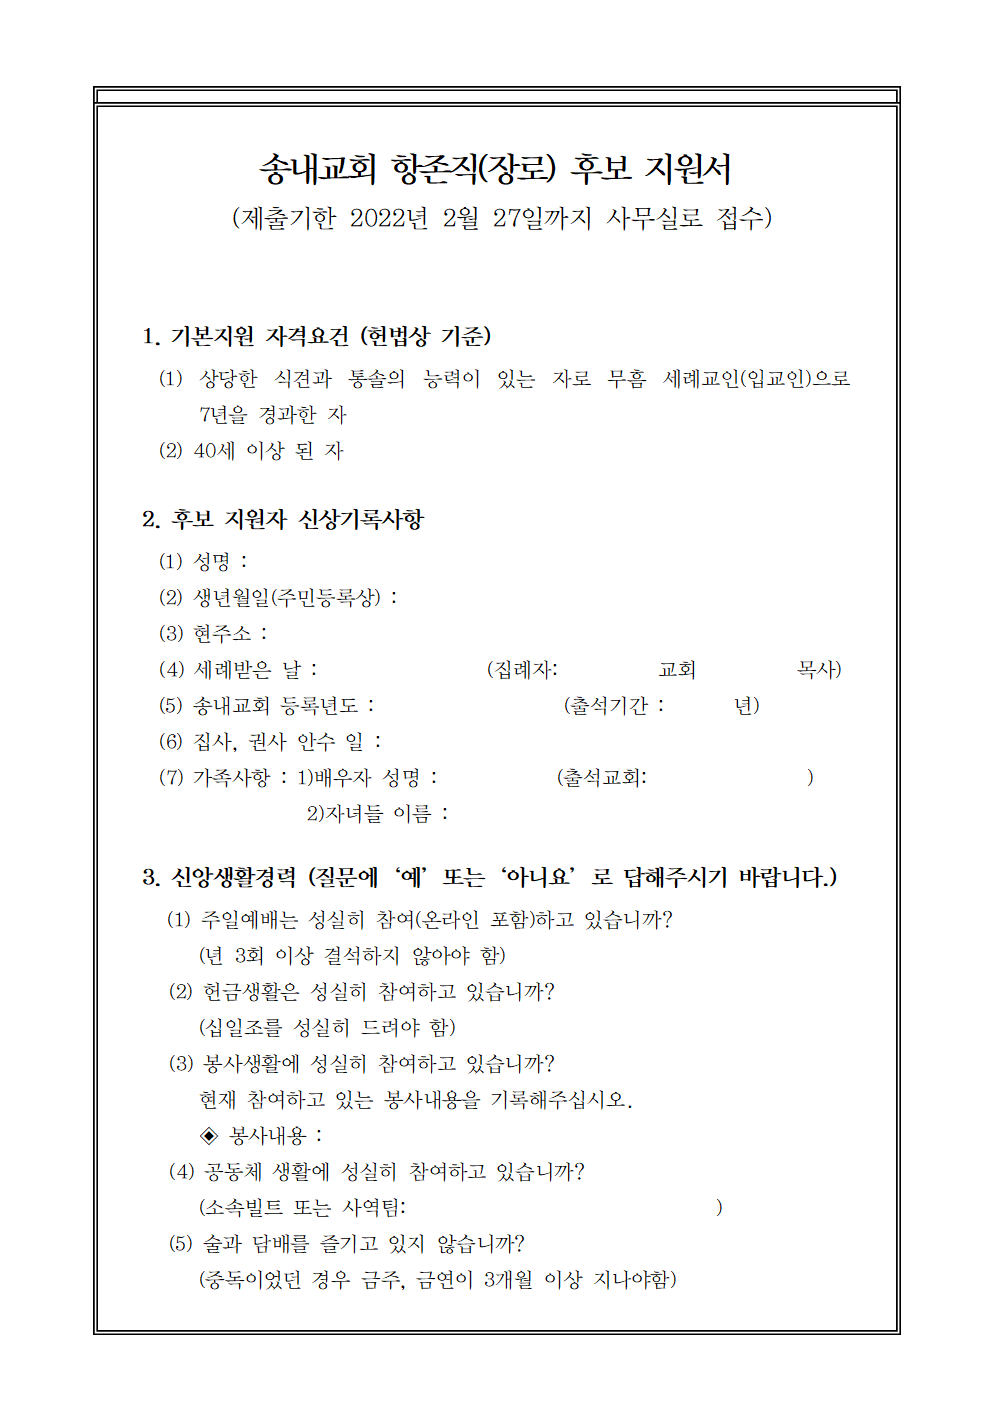 송내교회 장로 후보 지원서 (1)001.png